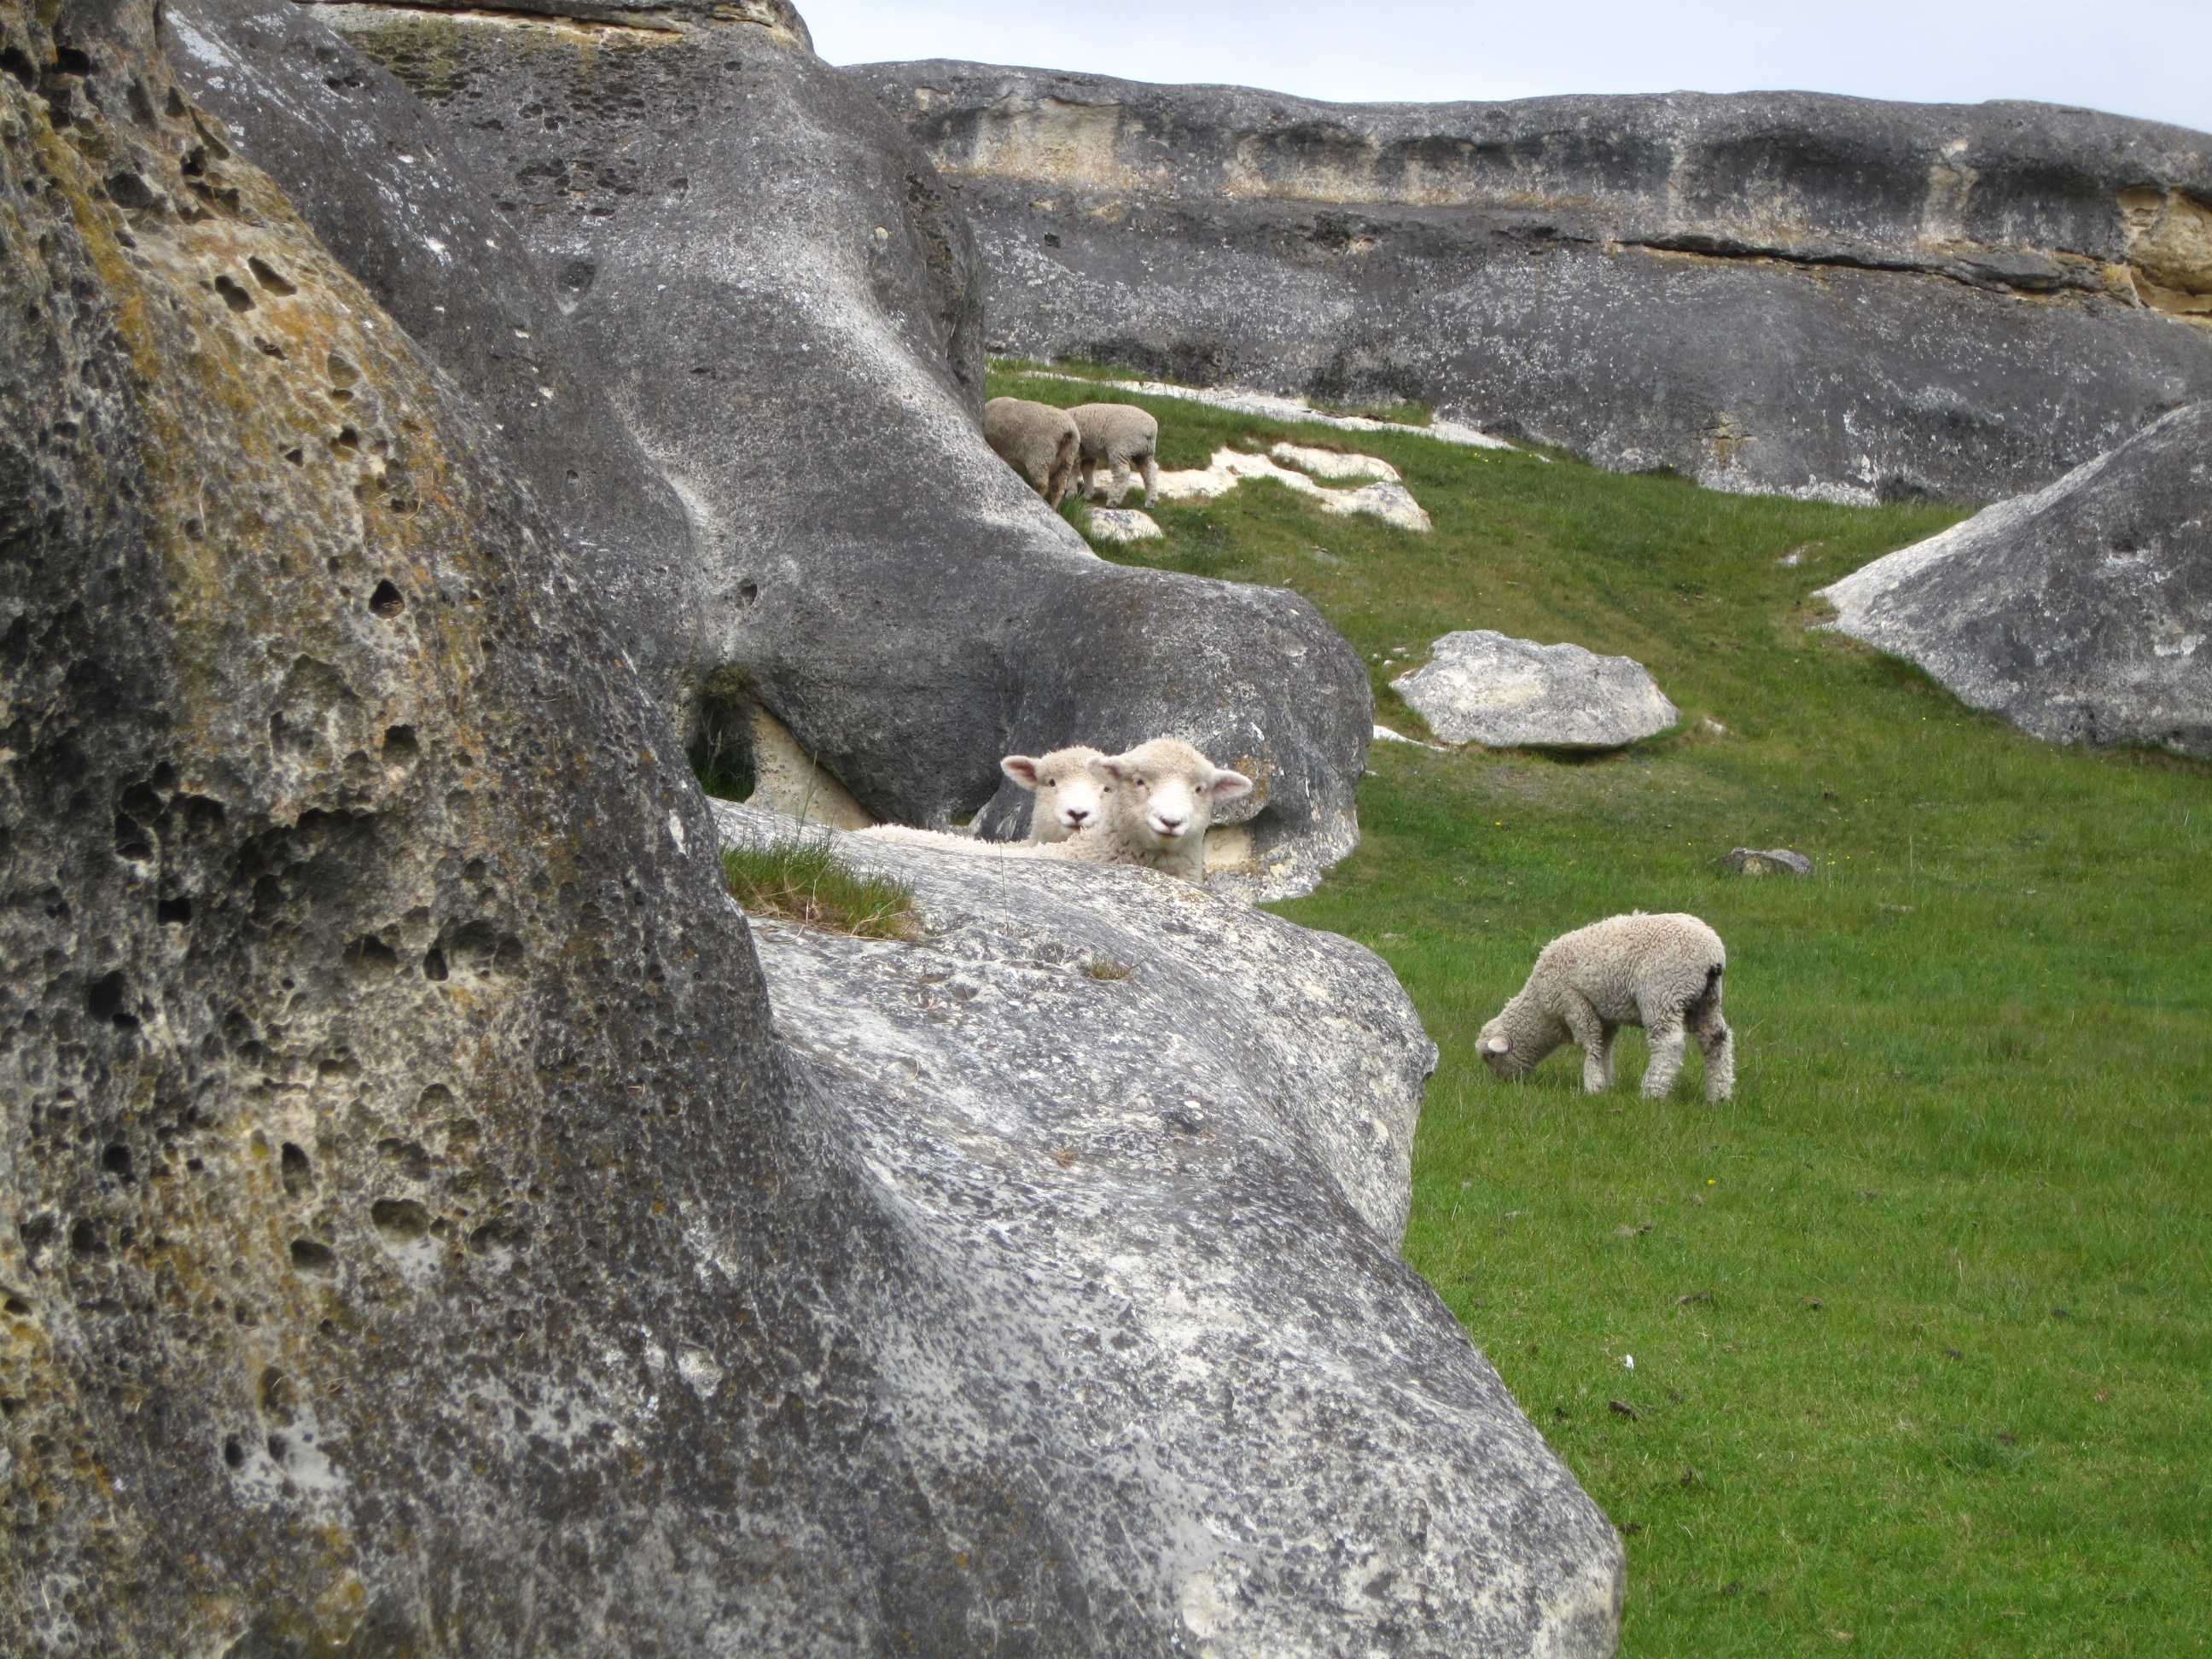 Lambs at Elephant Rocks